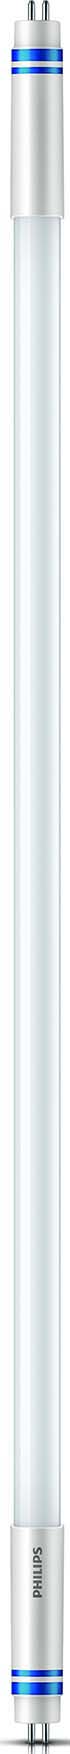 Philips Lighting LED-Tube T5 f. EVG G5, 865, 1449mm MASLEDtube#74339300 günstig online kaufen